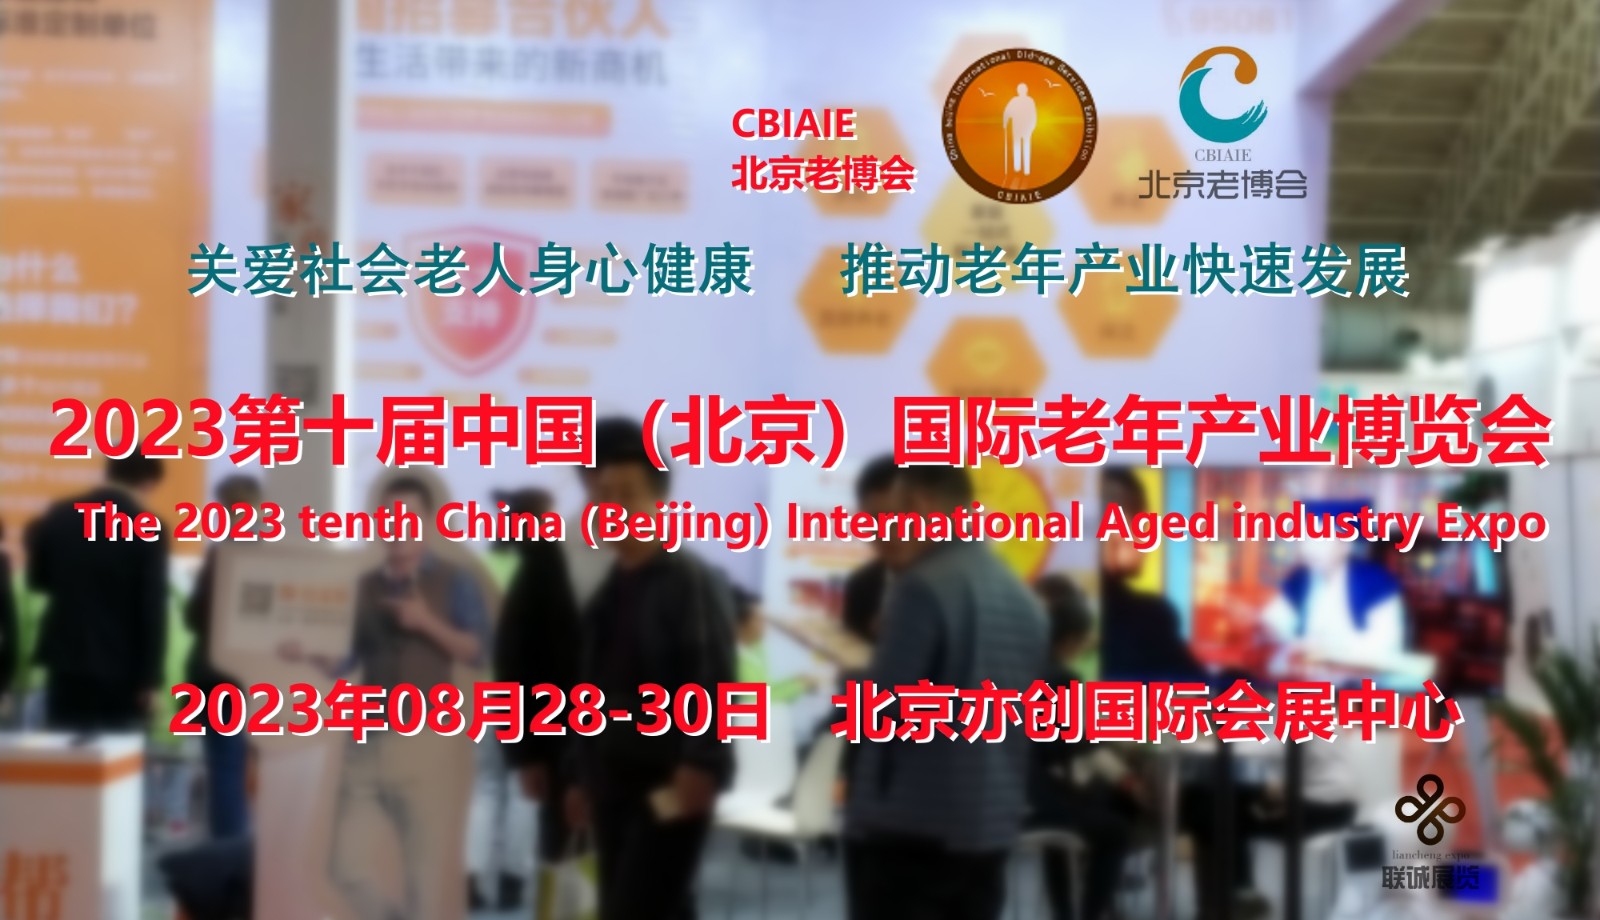 2023养老展，北京老年用品展，CBIAIE北京老博会图1